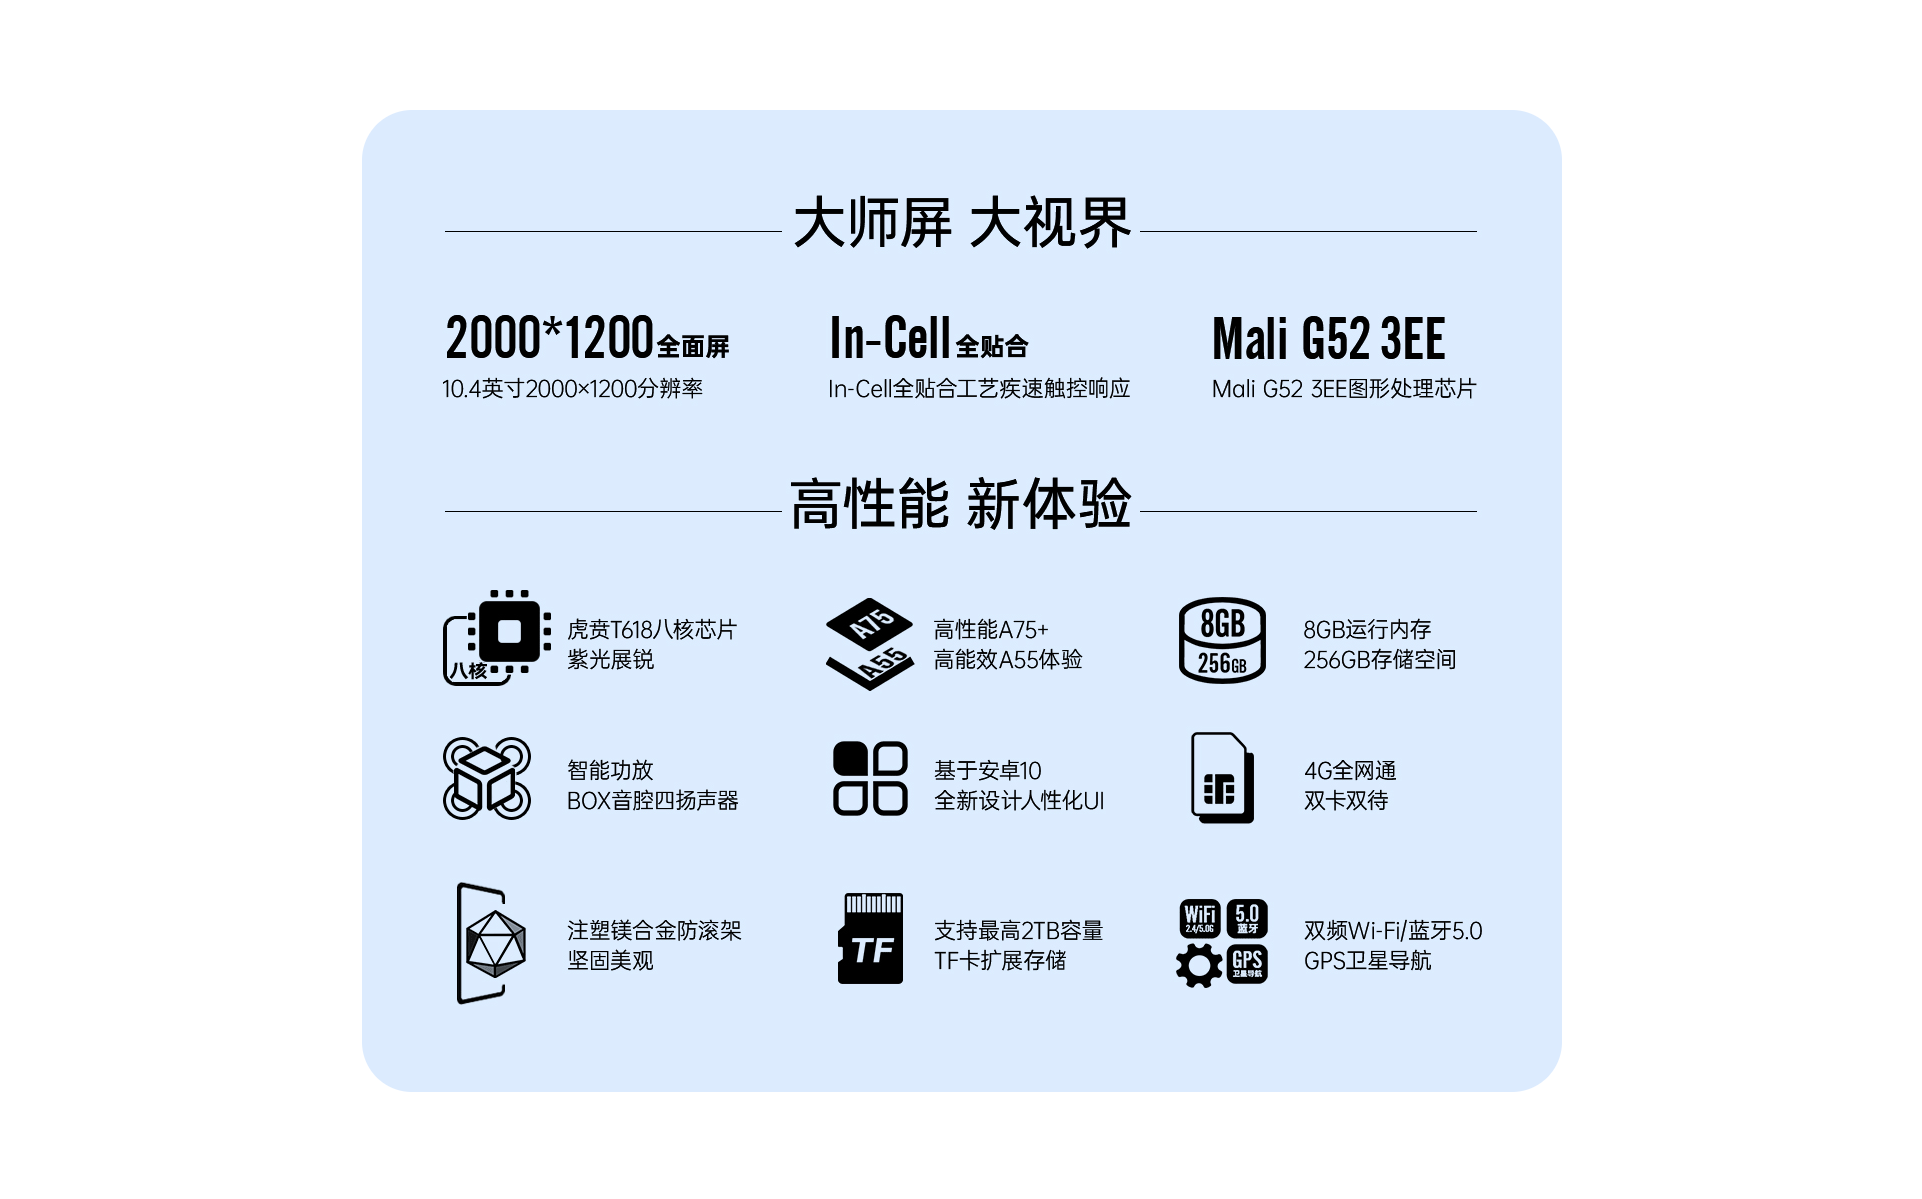 ภาพประกอบของ พร้อมส่งจากไทย  รับประกัน1ปี ❗ Alldocube iPlay 40 Pro จอ10.4นิ้ว Android11 RAM8GB ROM256GB ใส่ซิมได้ รองรับ4G แบต6200mAh แถมฟรี!! อแดปเตอร์ และสายชาร์จType-C (White)